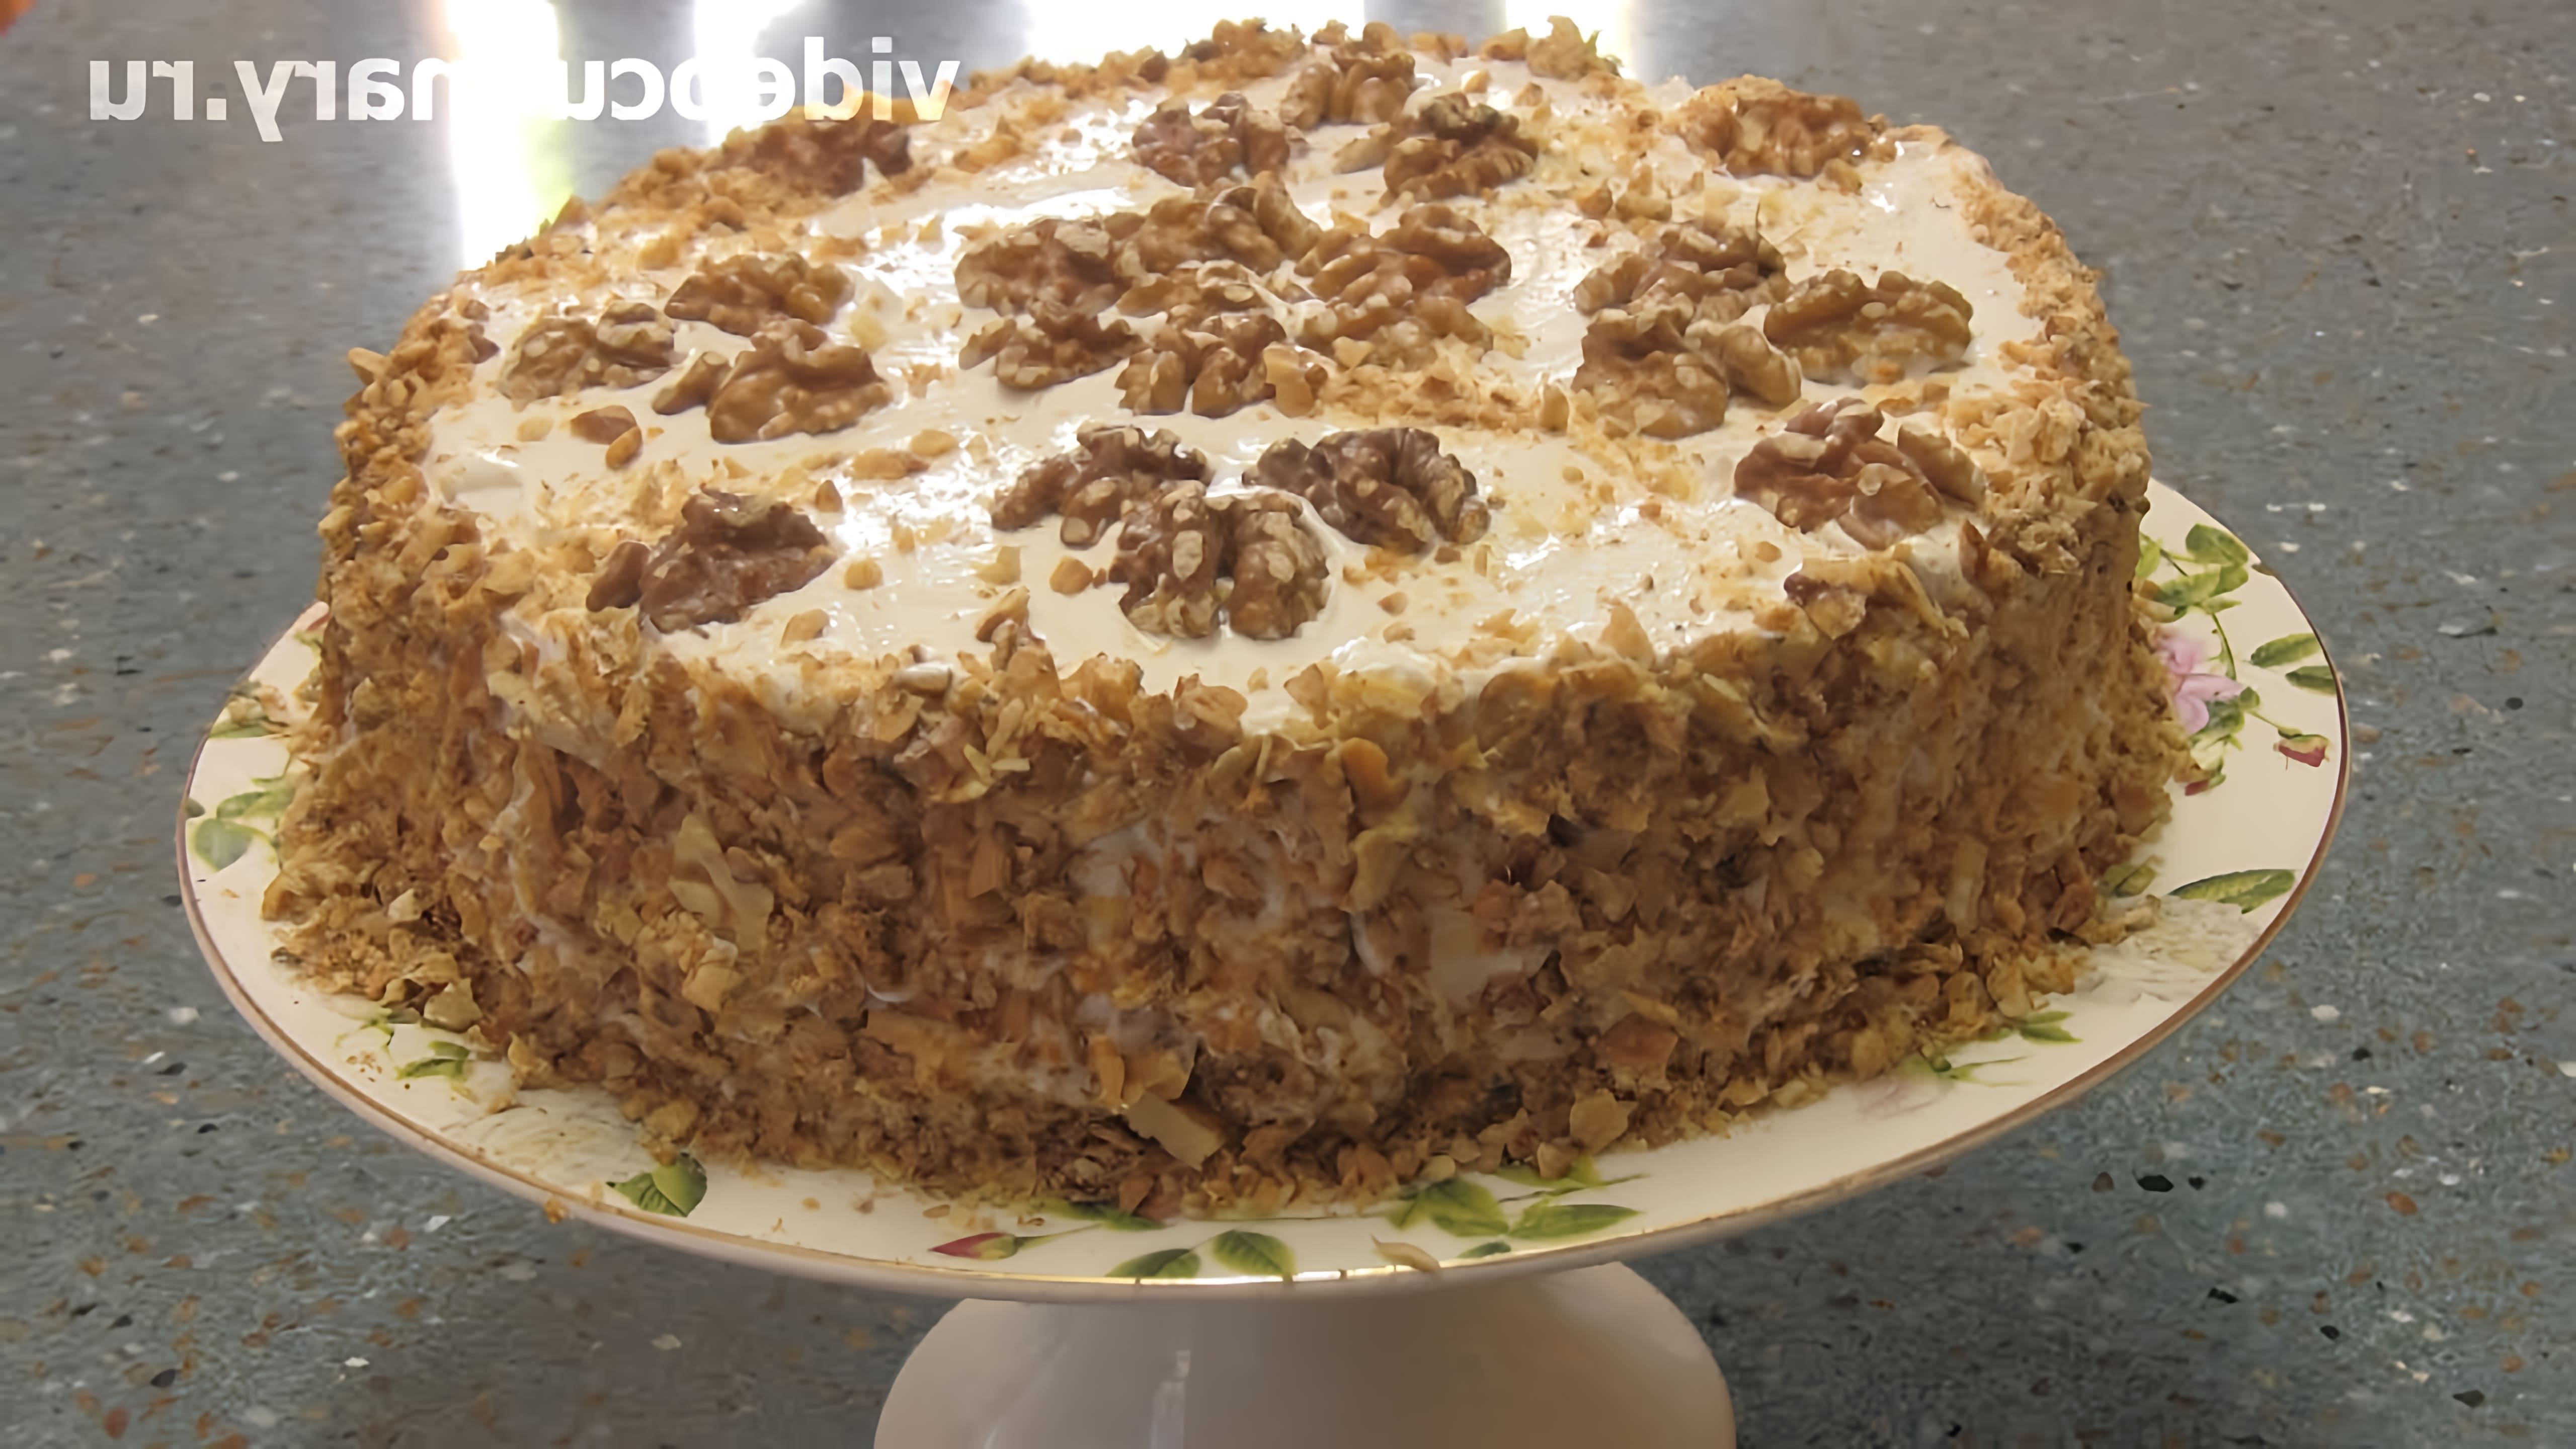 В этом видео демонстрируется рецепт приготовления торта "Сметанник" от Бабушки Эммы